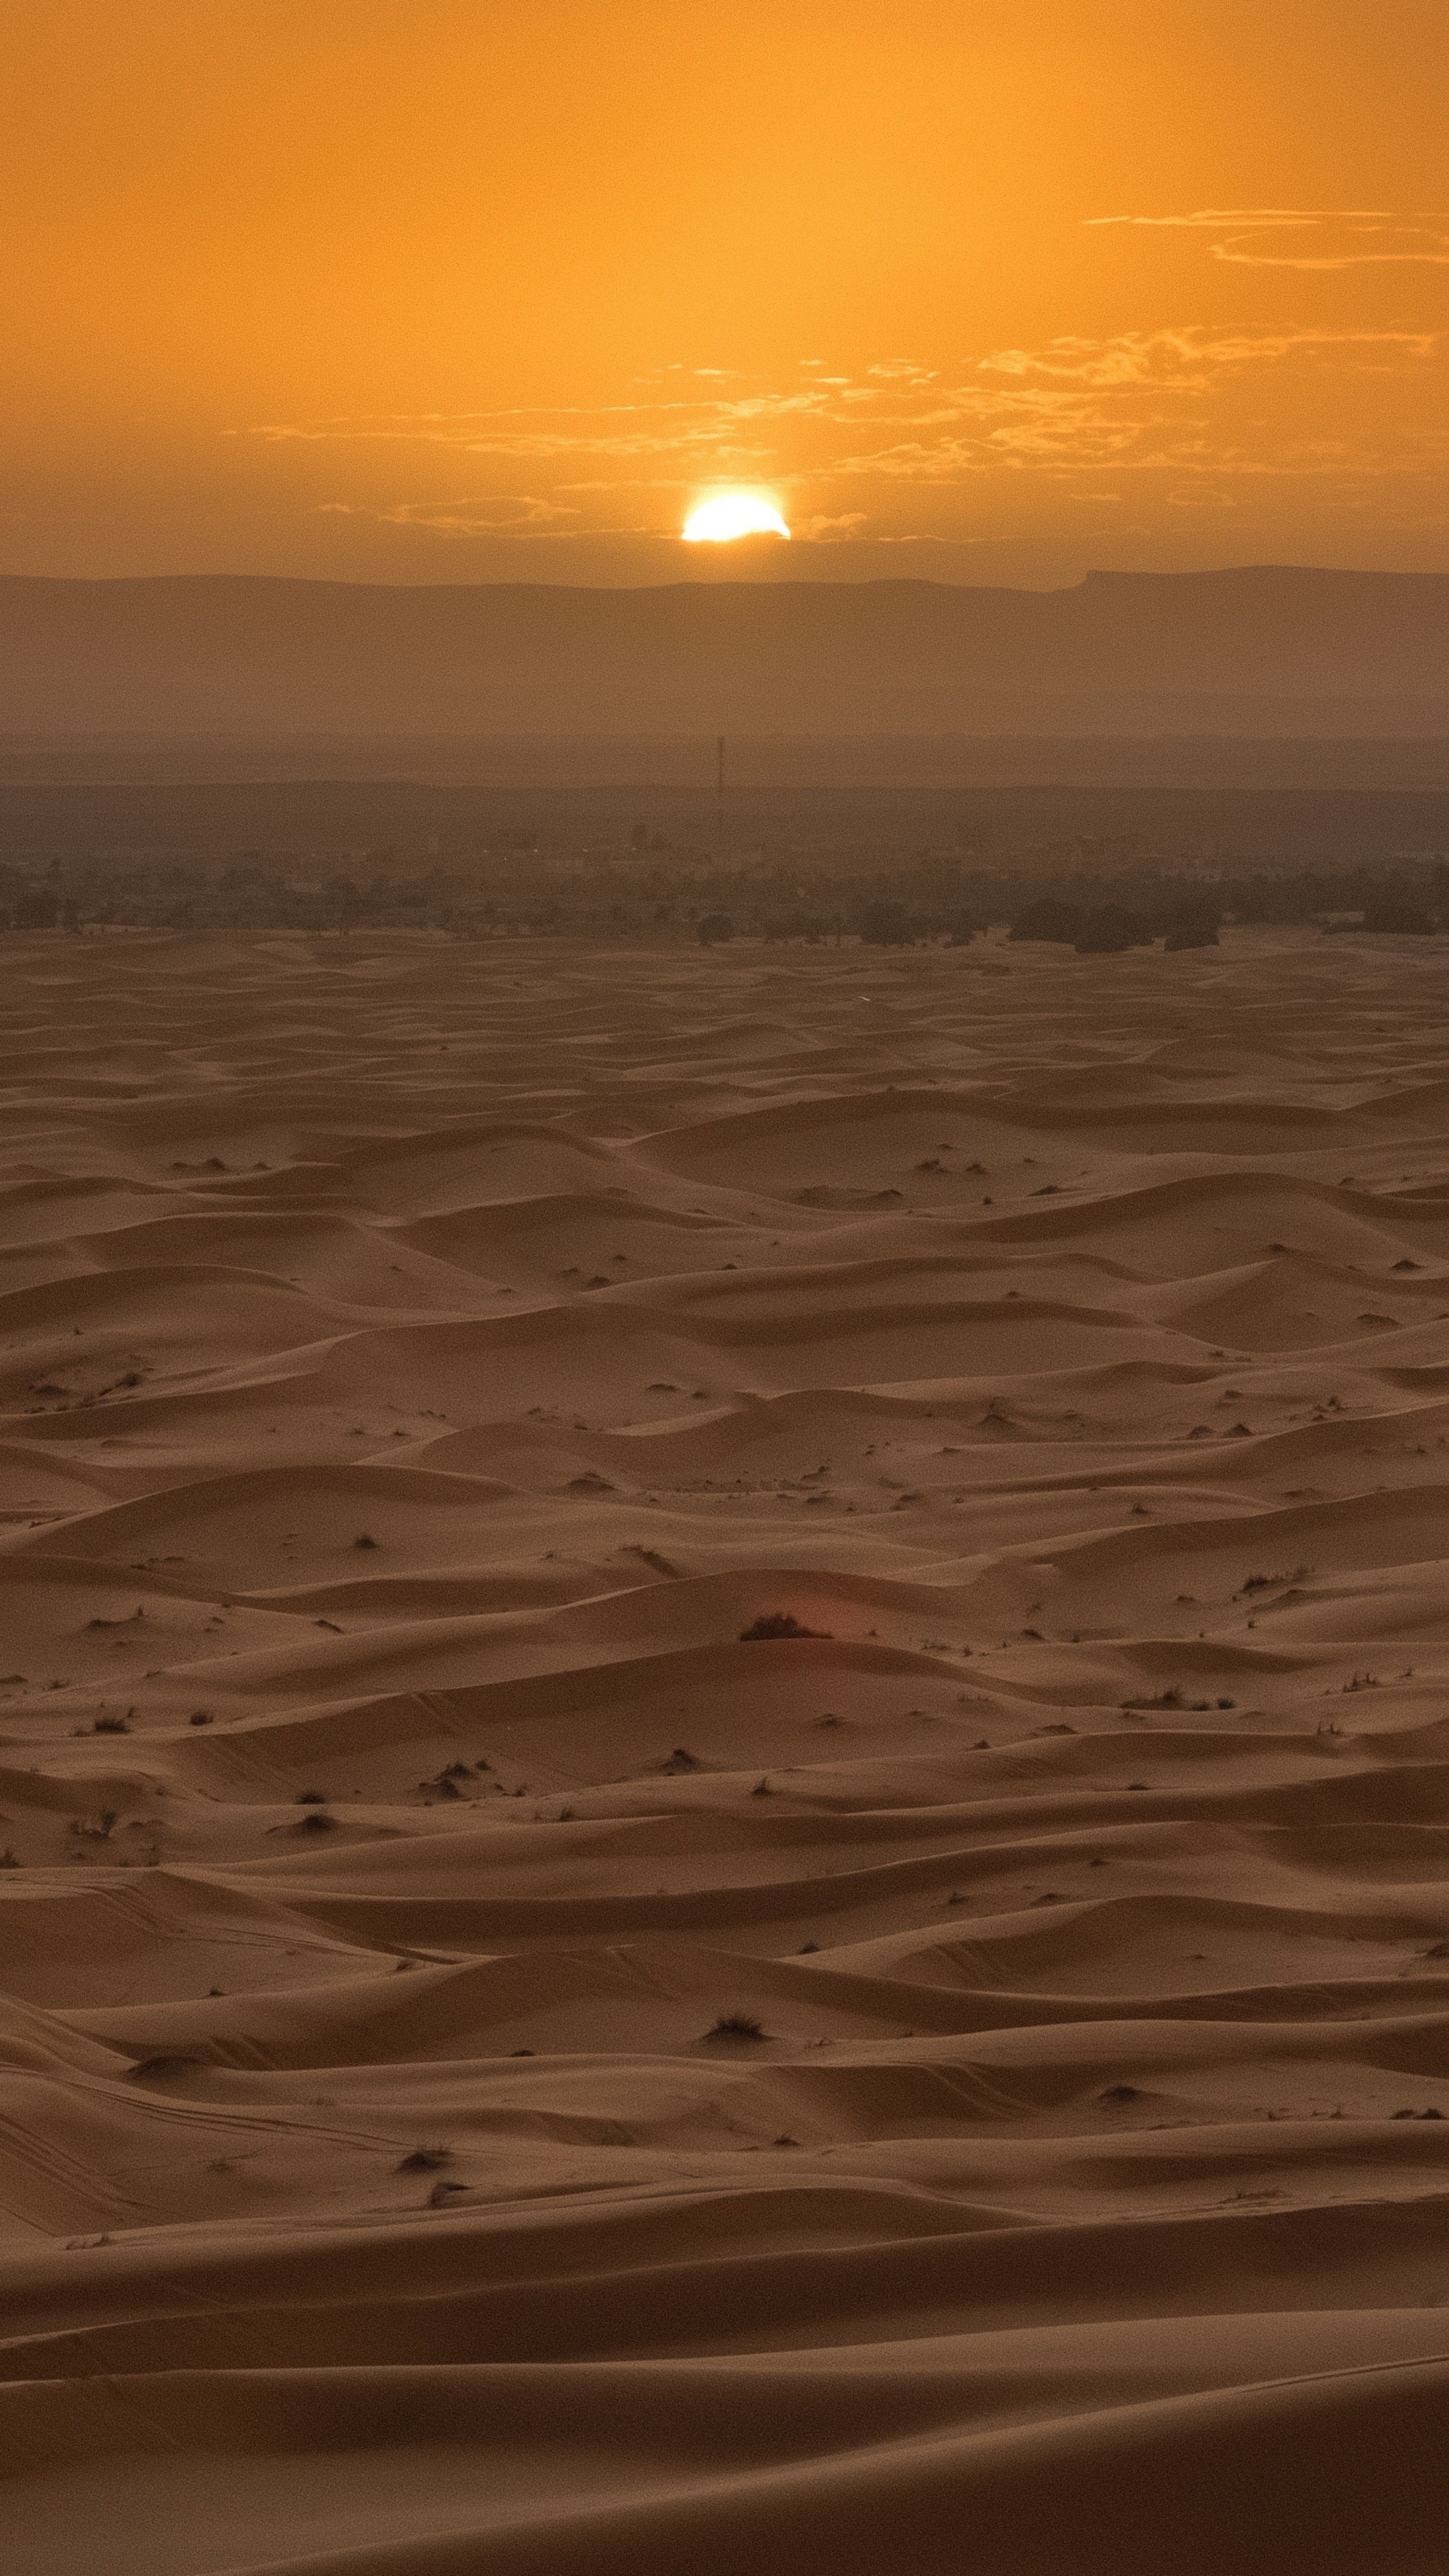 Gobi Desert, Desert sunset, Awe-inspiring beauty, Tranquility, 2160x3840 4K Handy